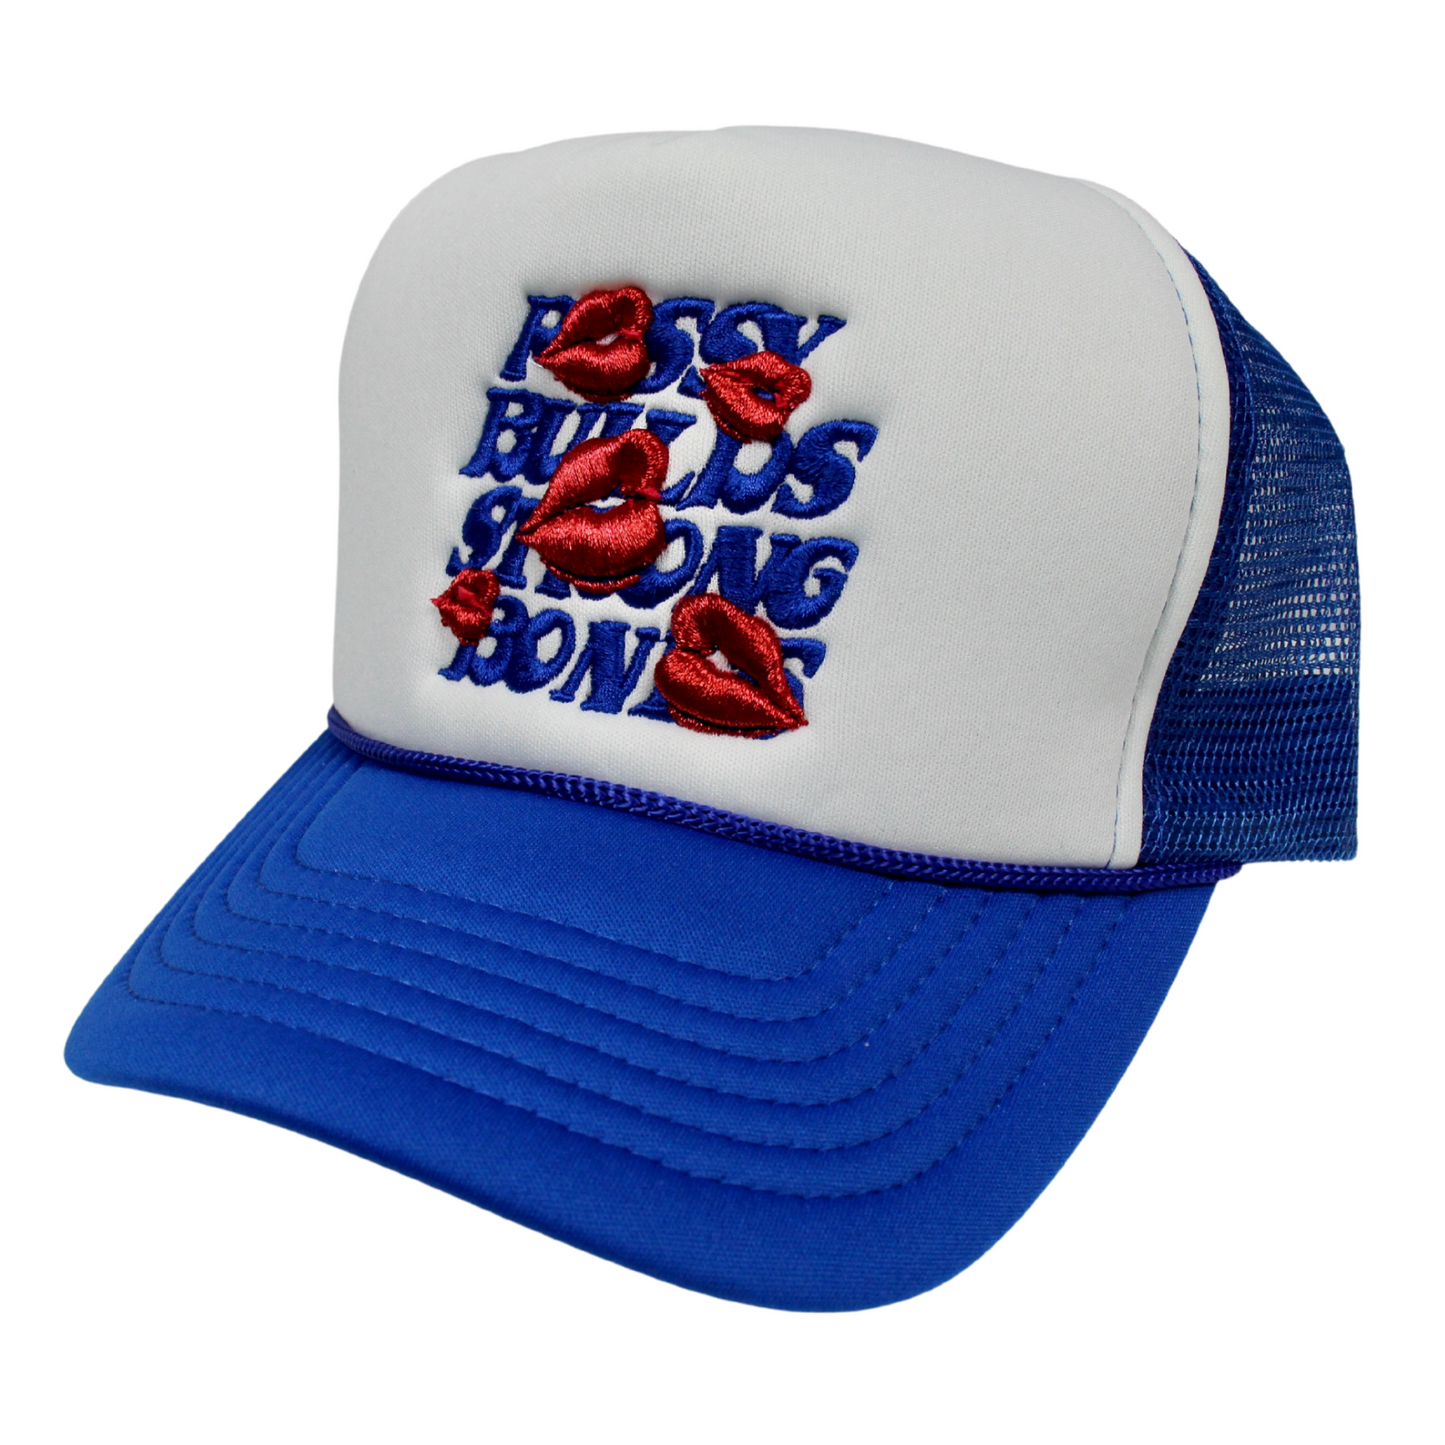 La Ropa PBSB Trucker Hat (Royal/White)